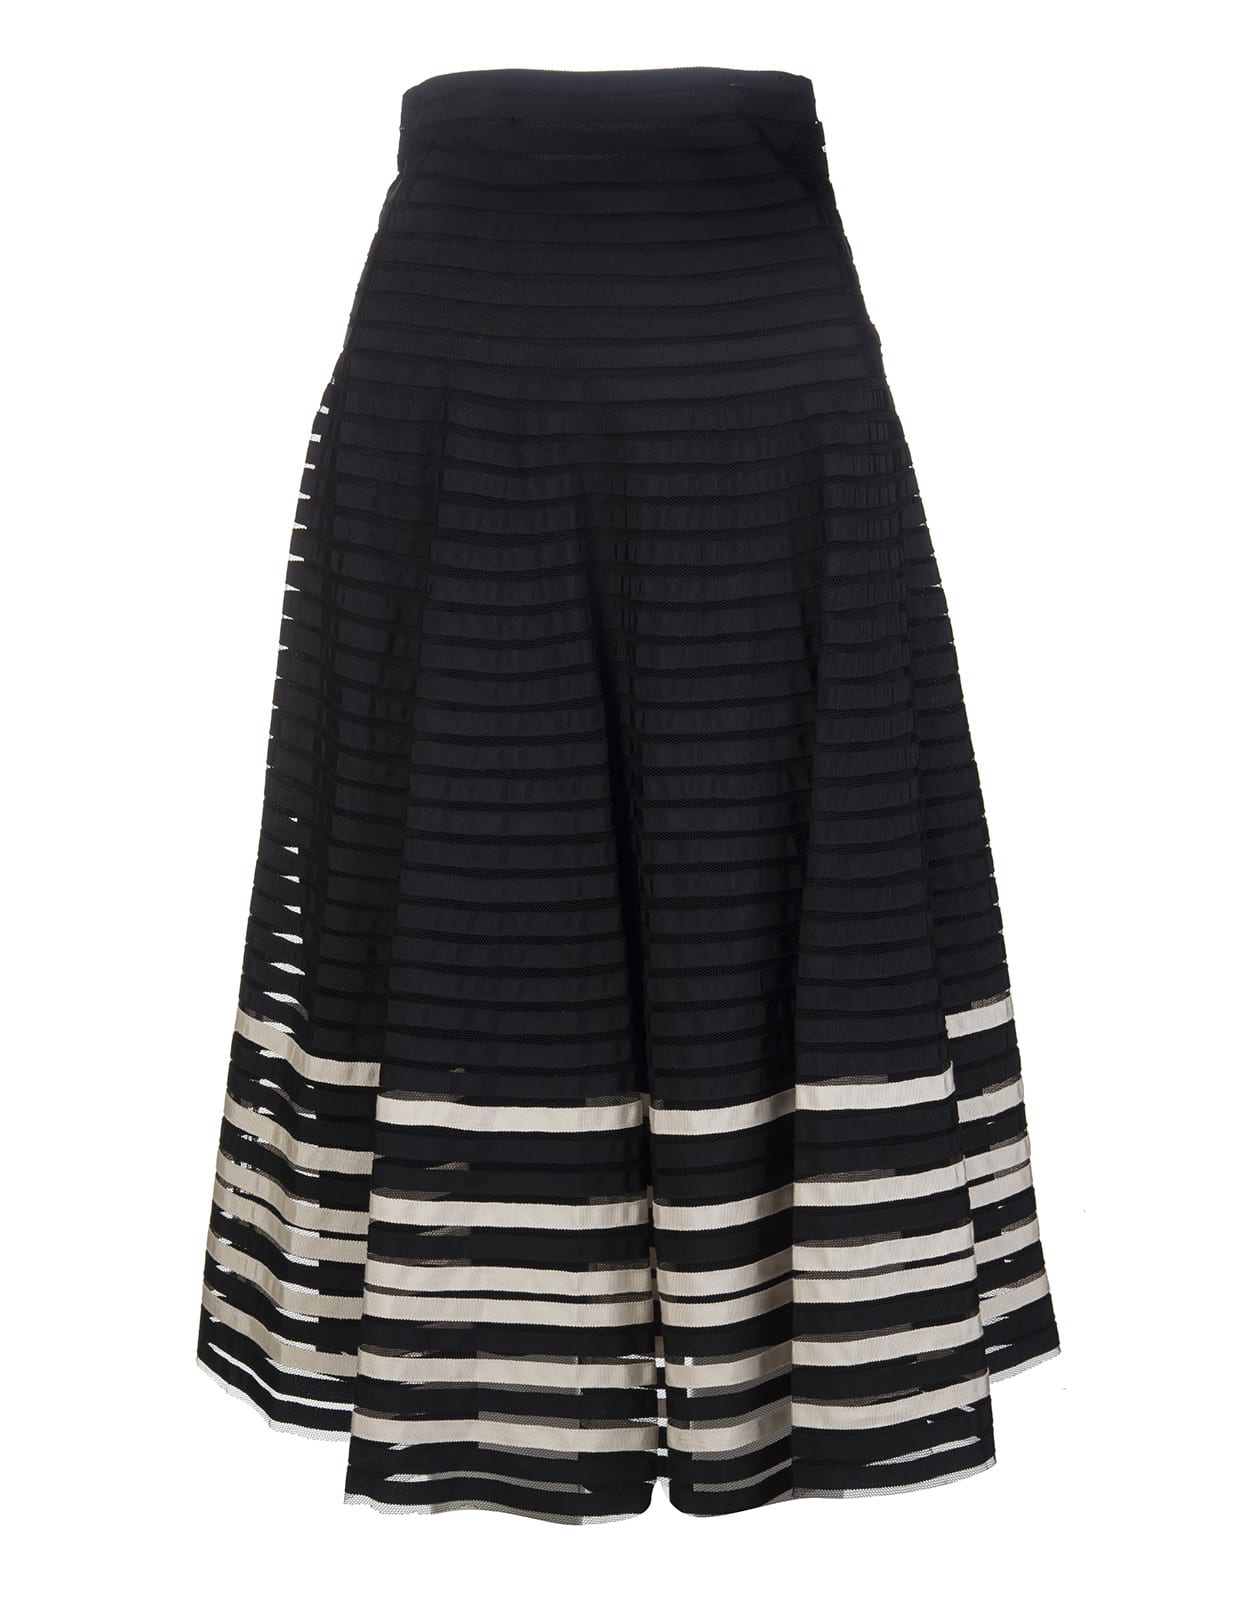 RED Valentino Black/white Striped Mid-length Skirt